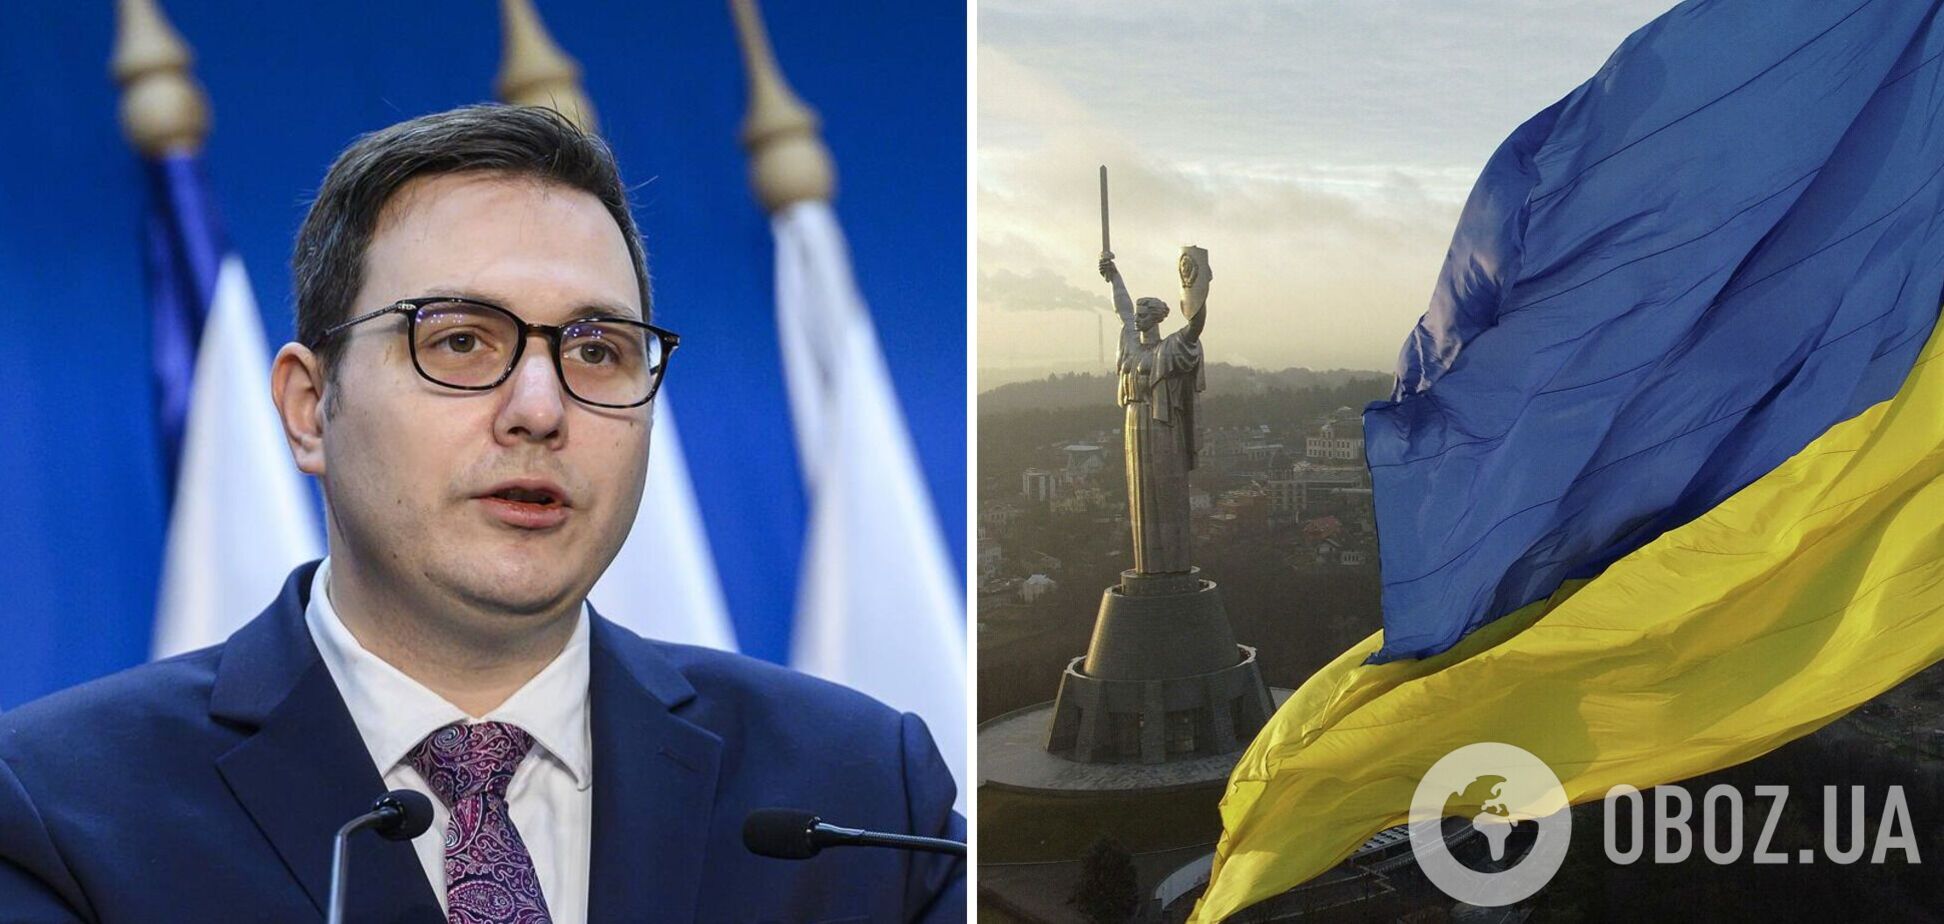 Захід не повинен диктувати Україні умови миру, – глава МЗС Чехії